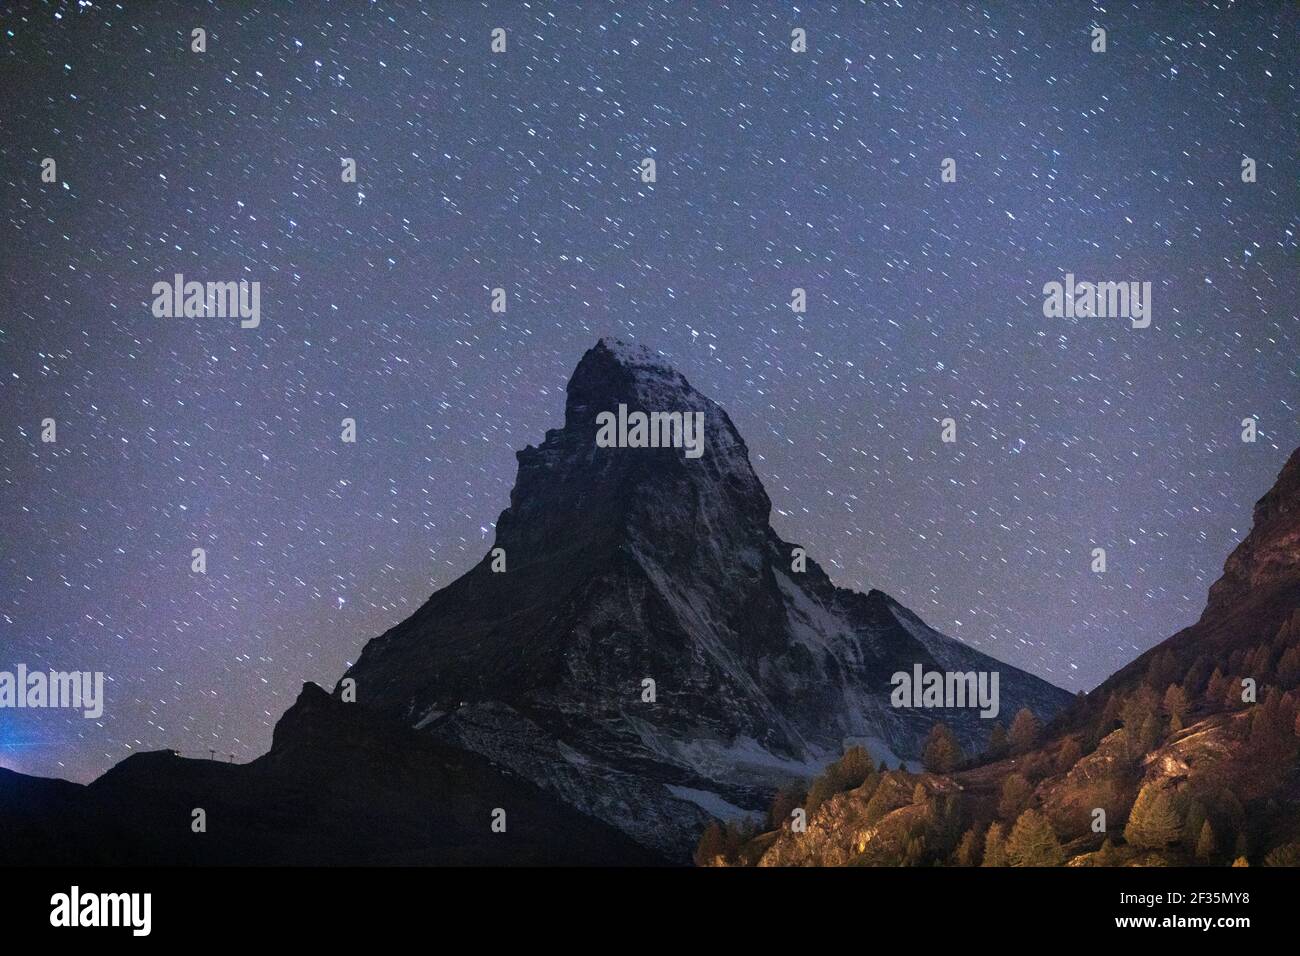 Suisse, Valais, Zermatt, le sommet du Cervin avec des étoiles Banque D'Images